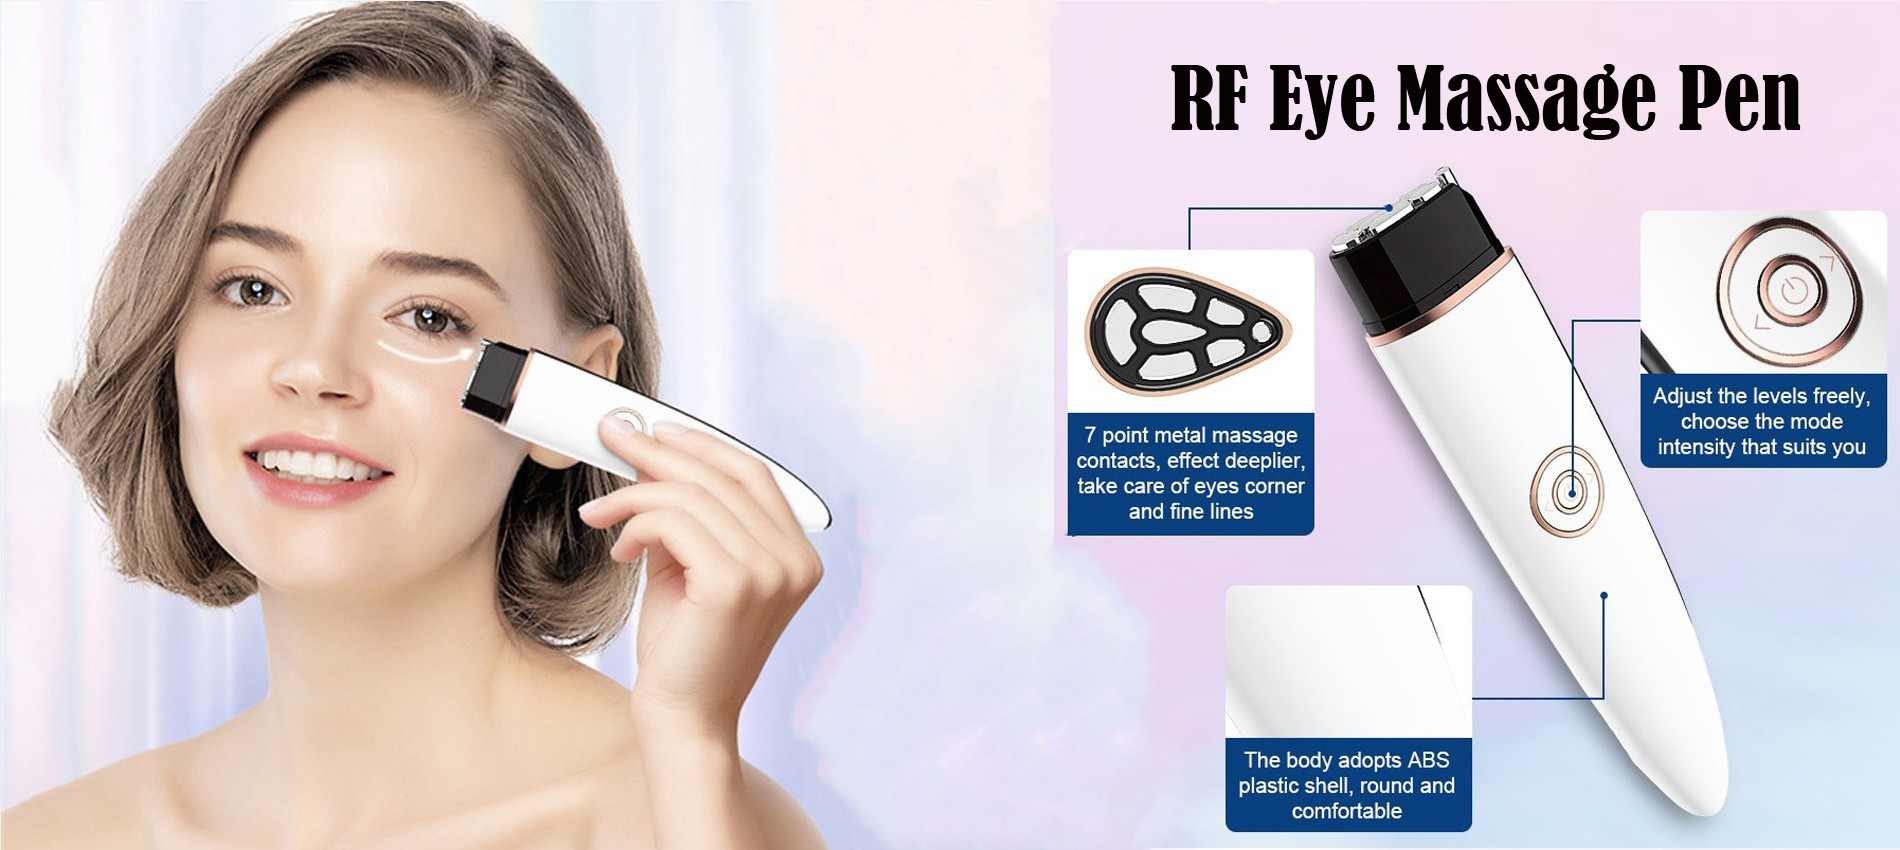 RF eye massage pen